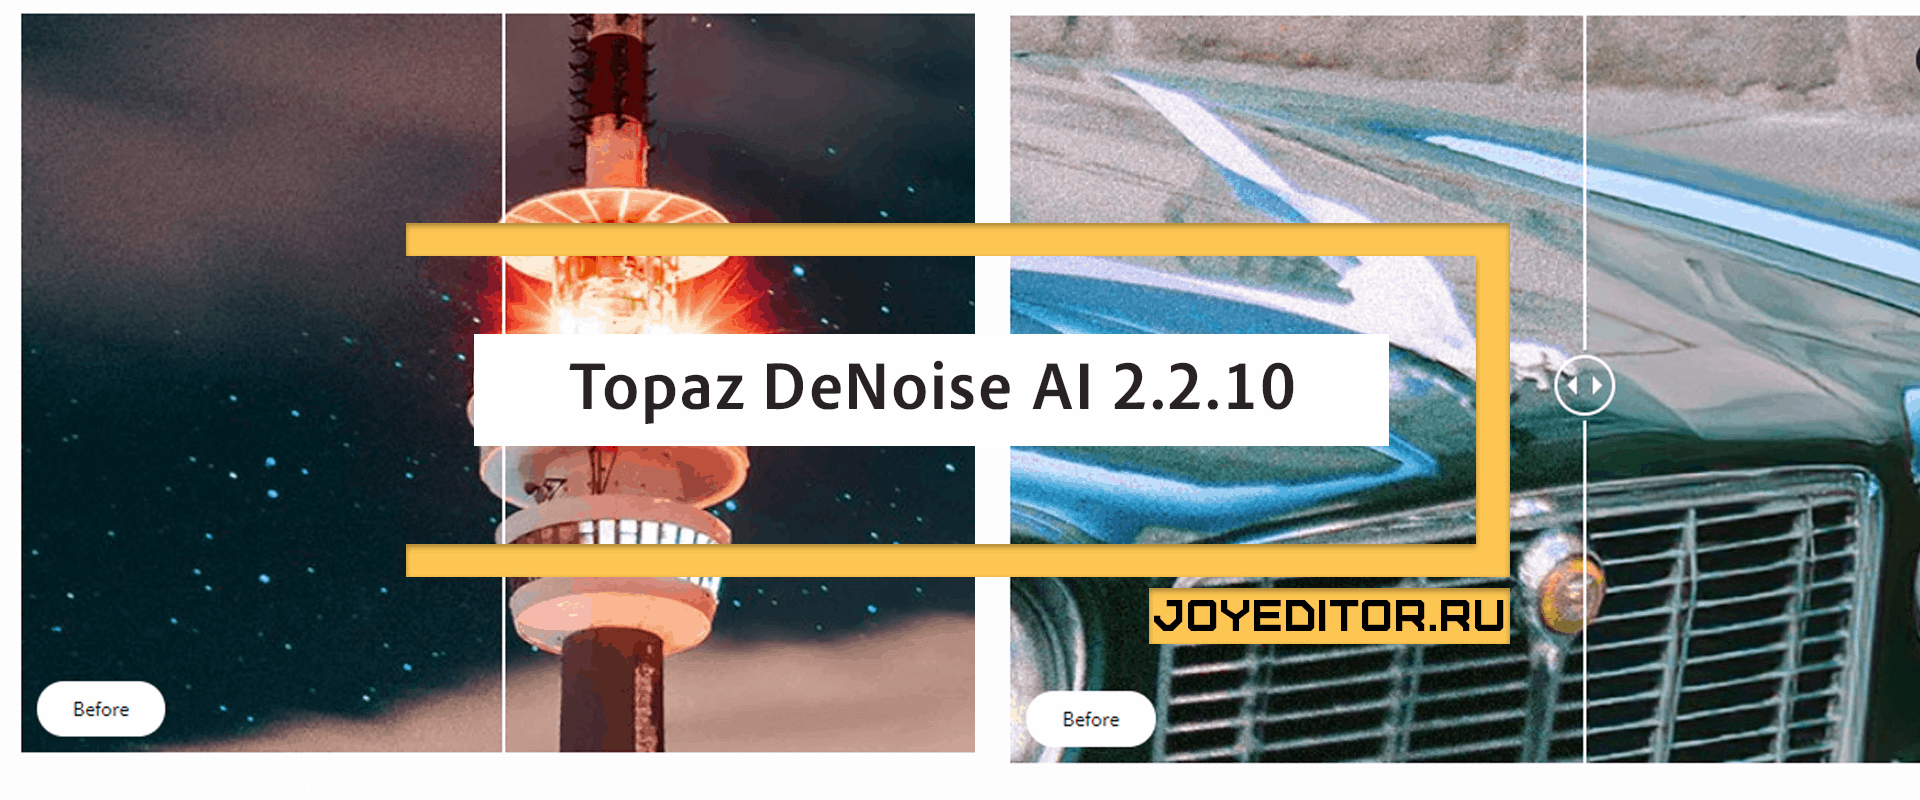 Topaz DeNoise AI 2.2.10